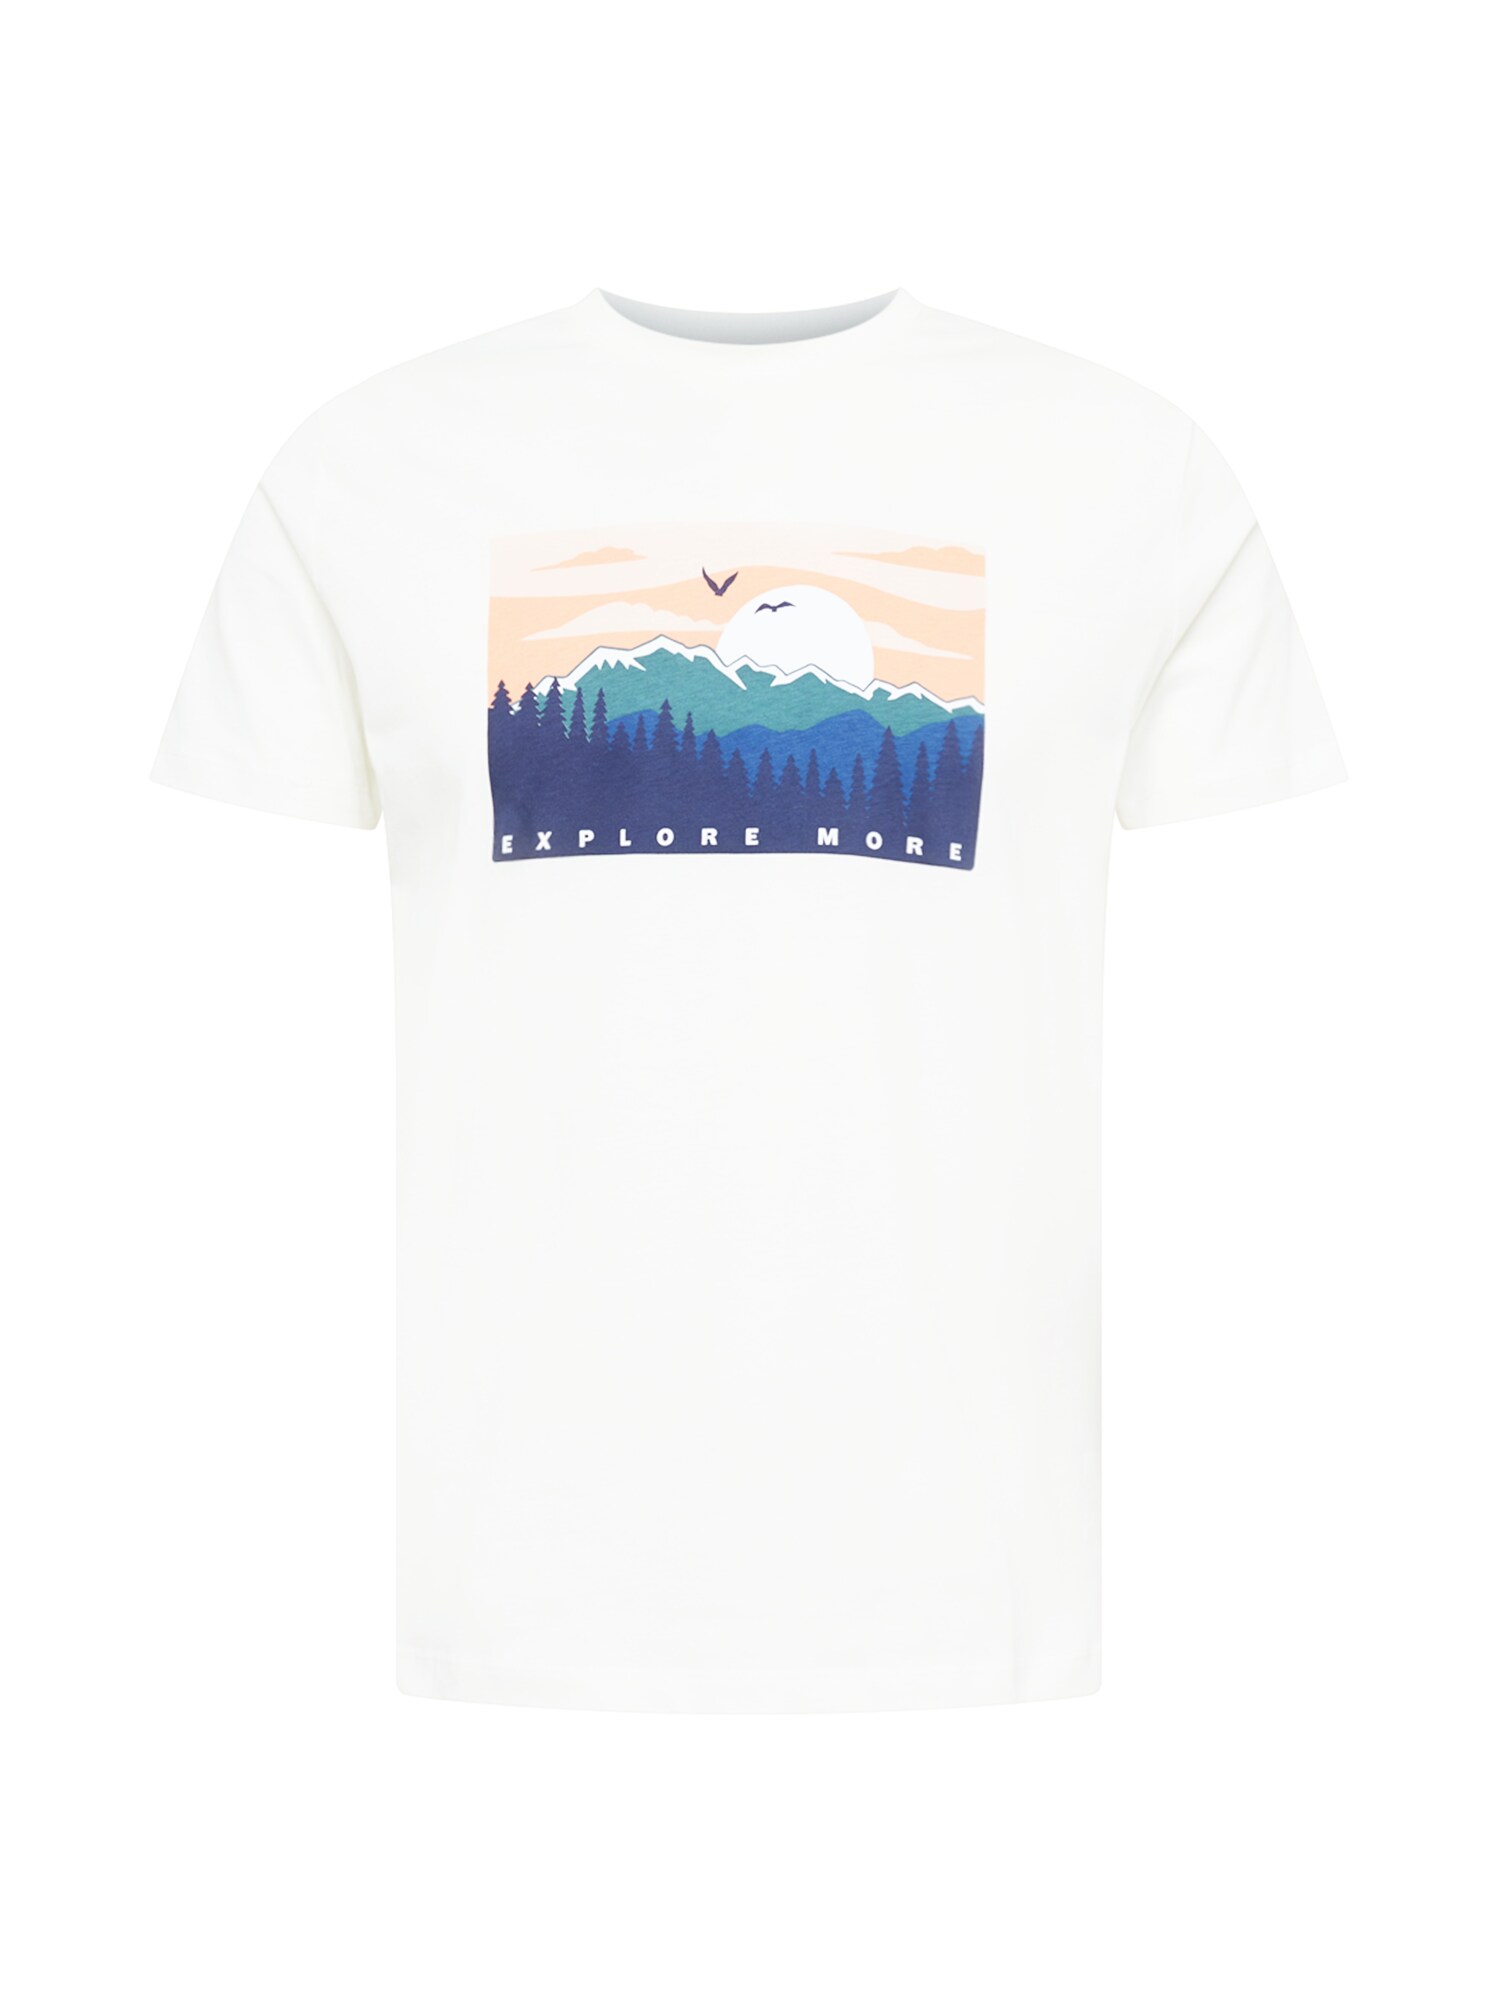 WESTMARK LONDON Marškinėliai 'EXPLORE' balta / tamsiai mėlyna jūros spalva / turkio spalva / abrikosų spalva / mėlyna